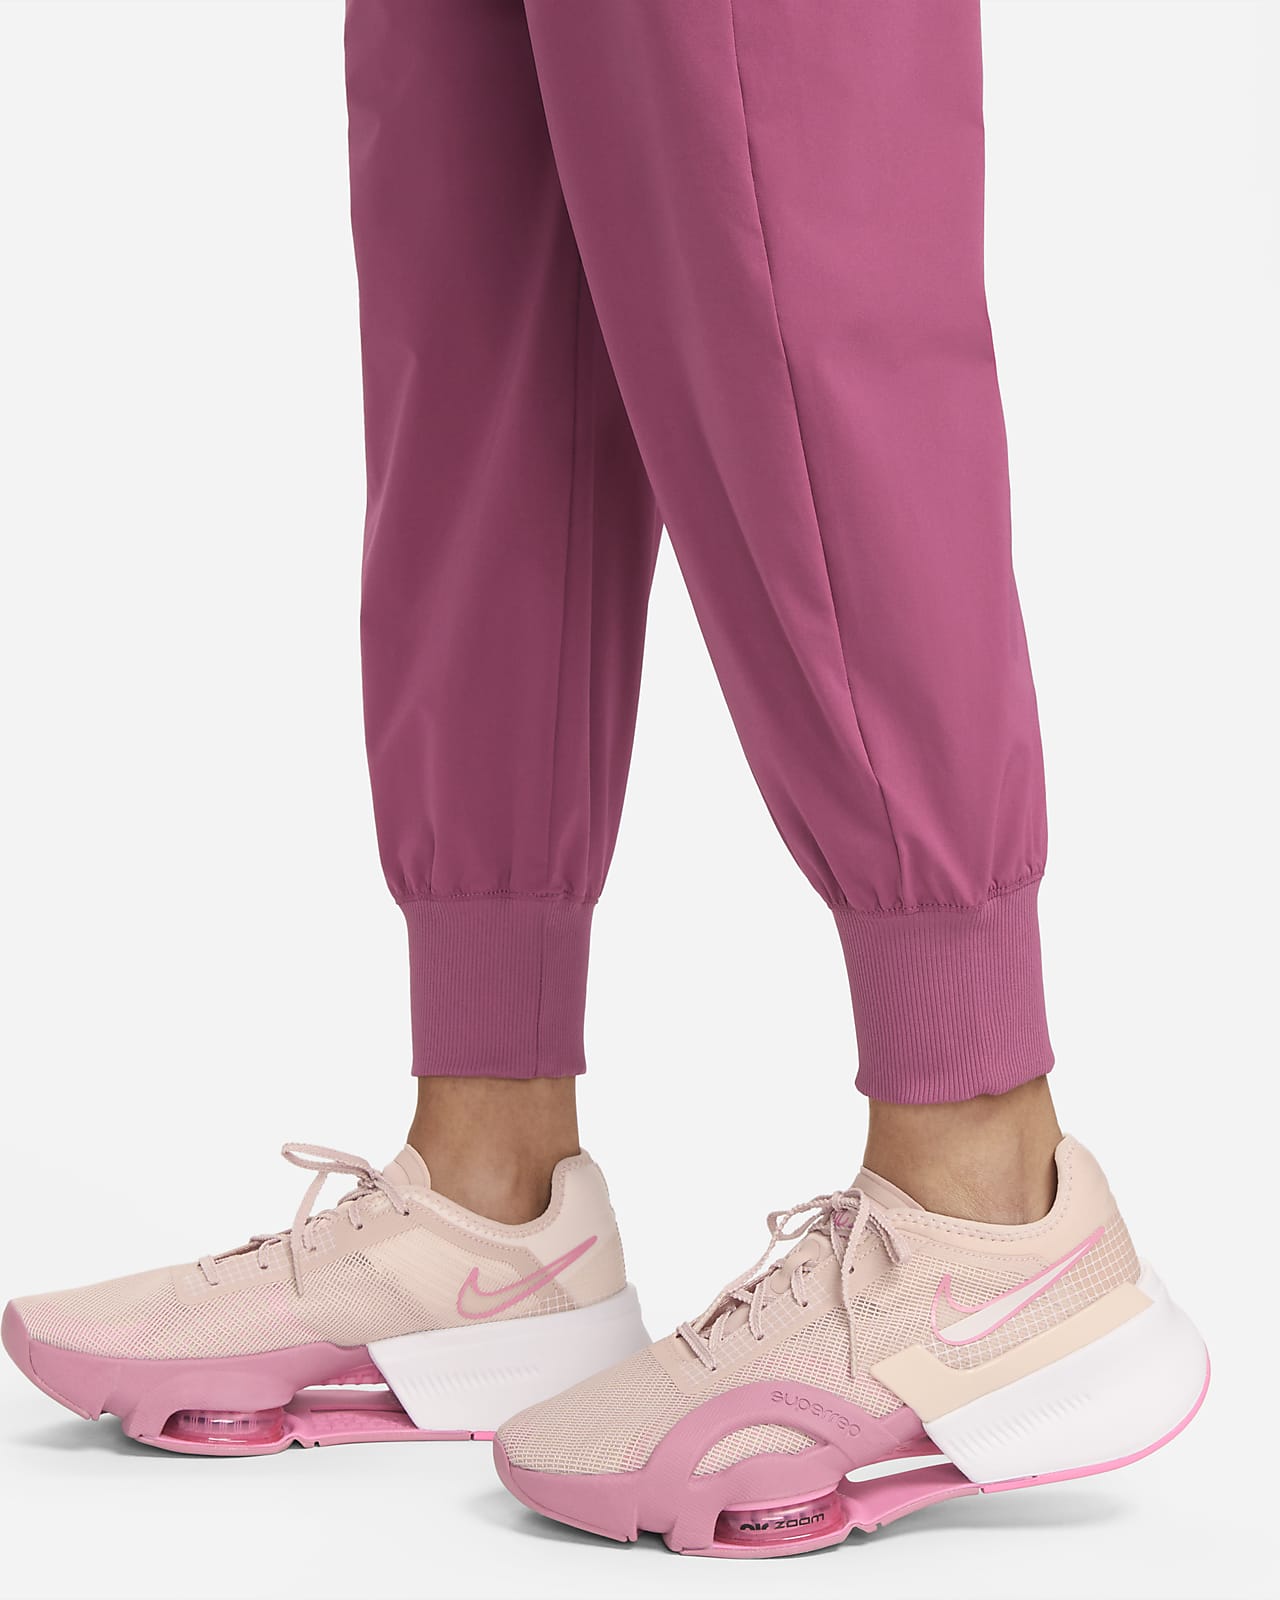 Штани Nike Yoga Dri-Fit Womens 7/8 Fleece Joggers Pink DM7037-665 купити в  Києві, Харкові, Дніпрі, Одесі, Запоріжжі, Львові